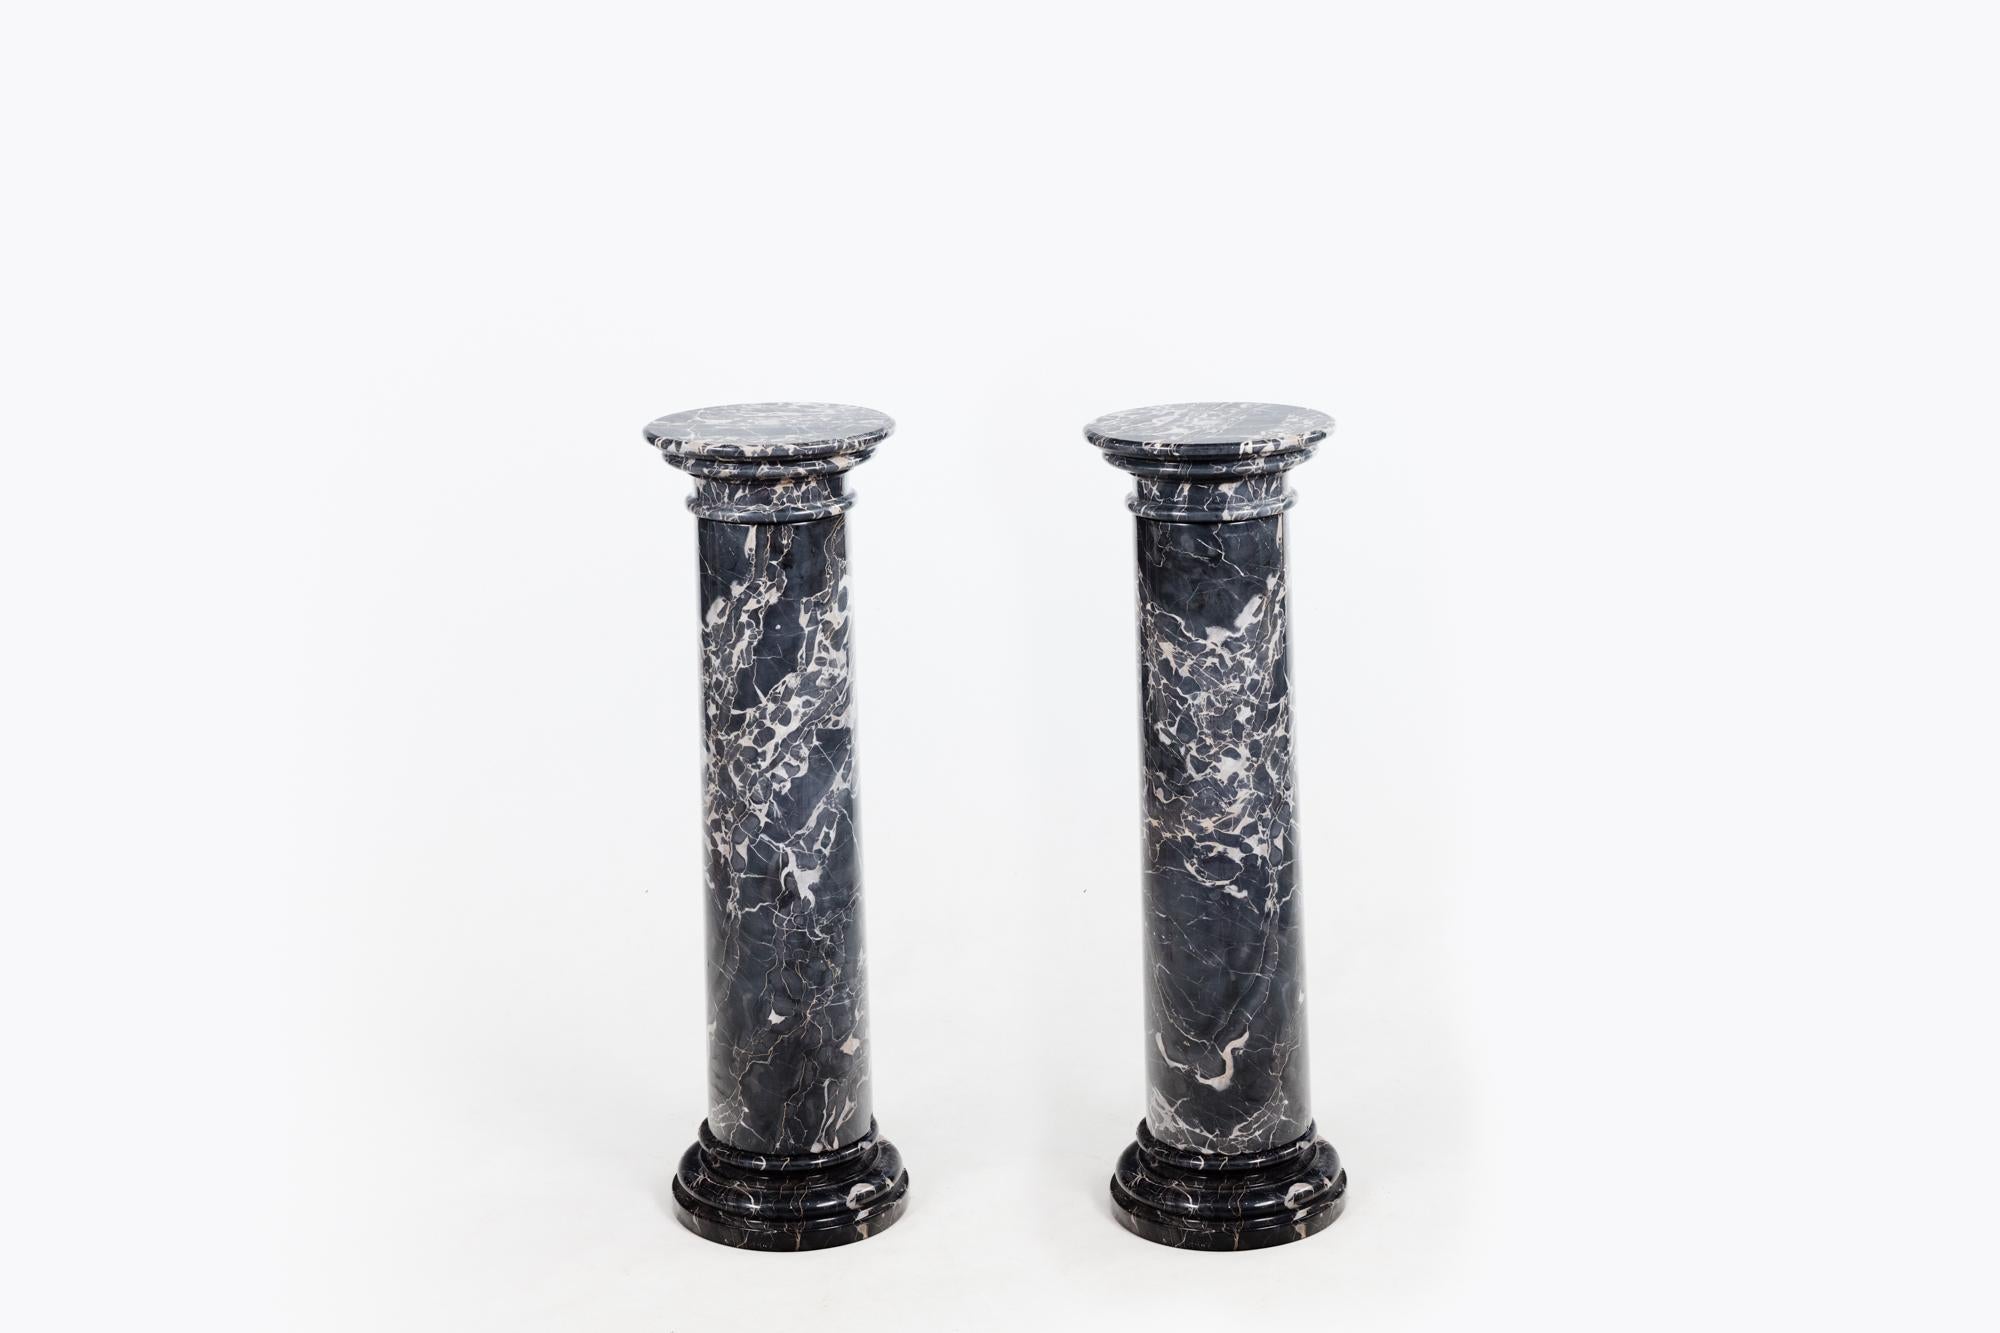 Paire de colonnes en marbre gris colombe du 19e siècle, de bonnes proportions, avec des bases circulaires étagées.